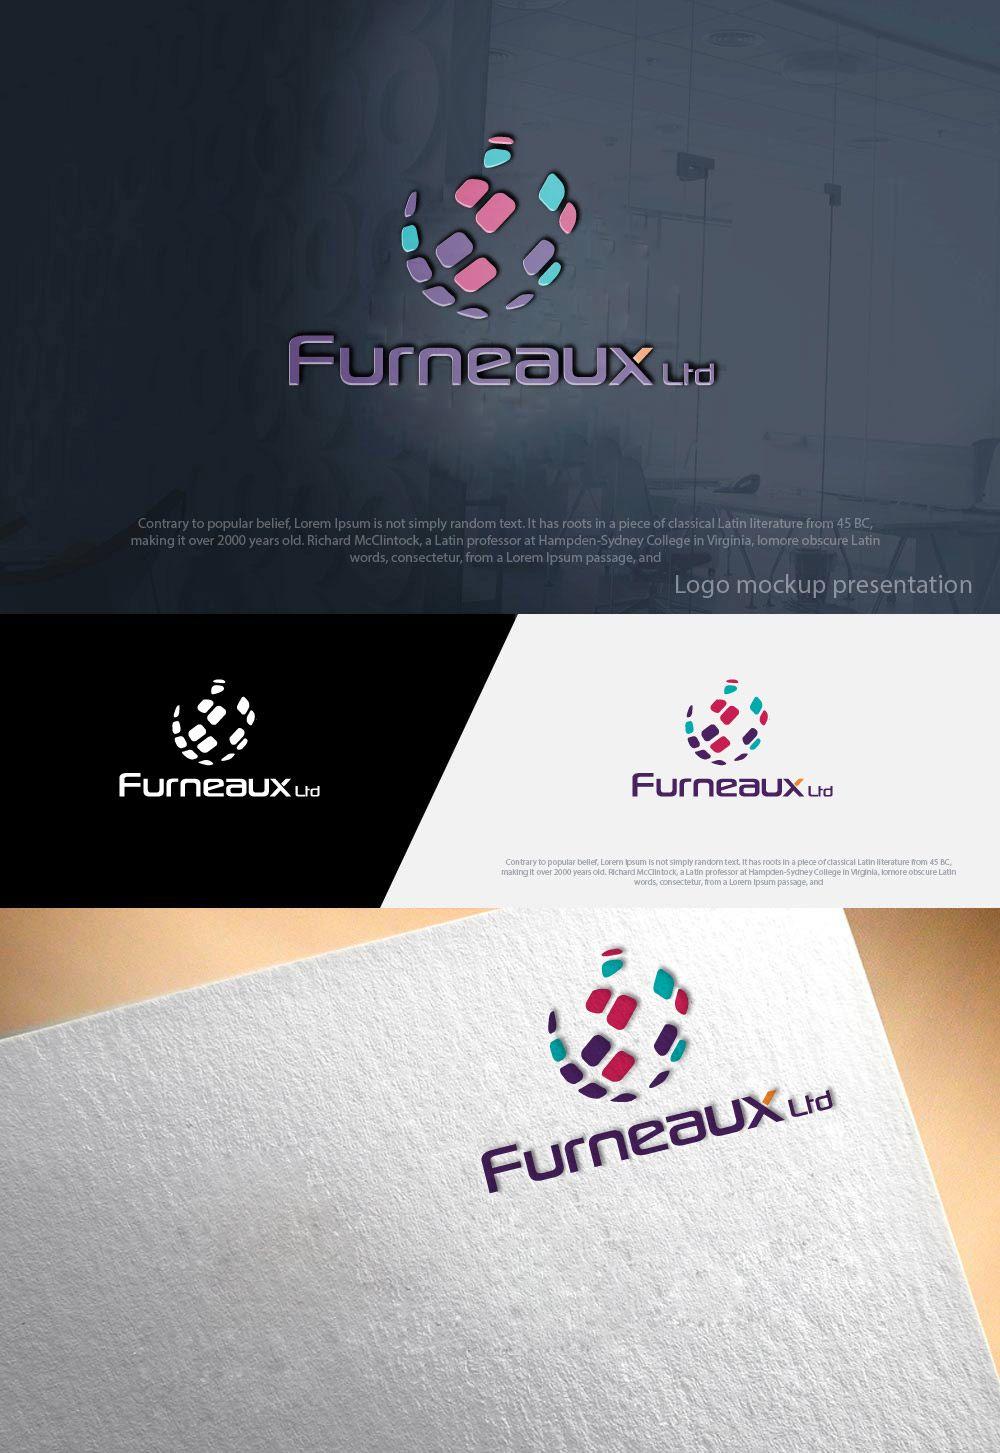 Old Ud Logo - Upmarket, Modern, Business Logo Design for Furneaux Limited or